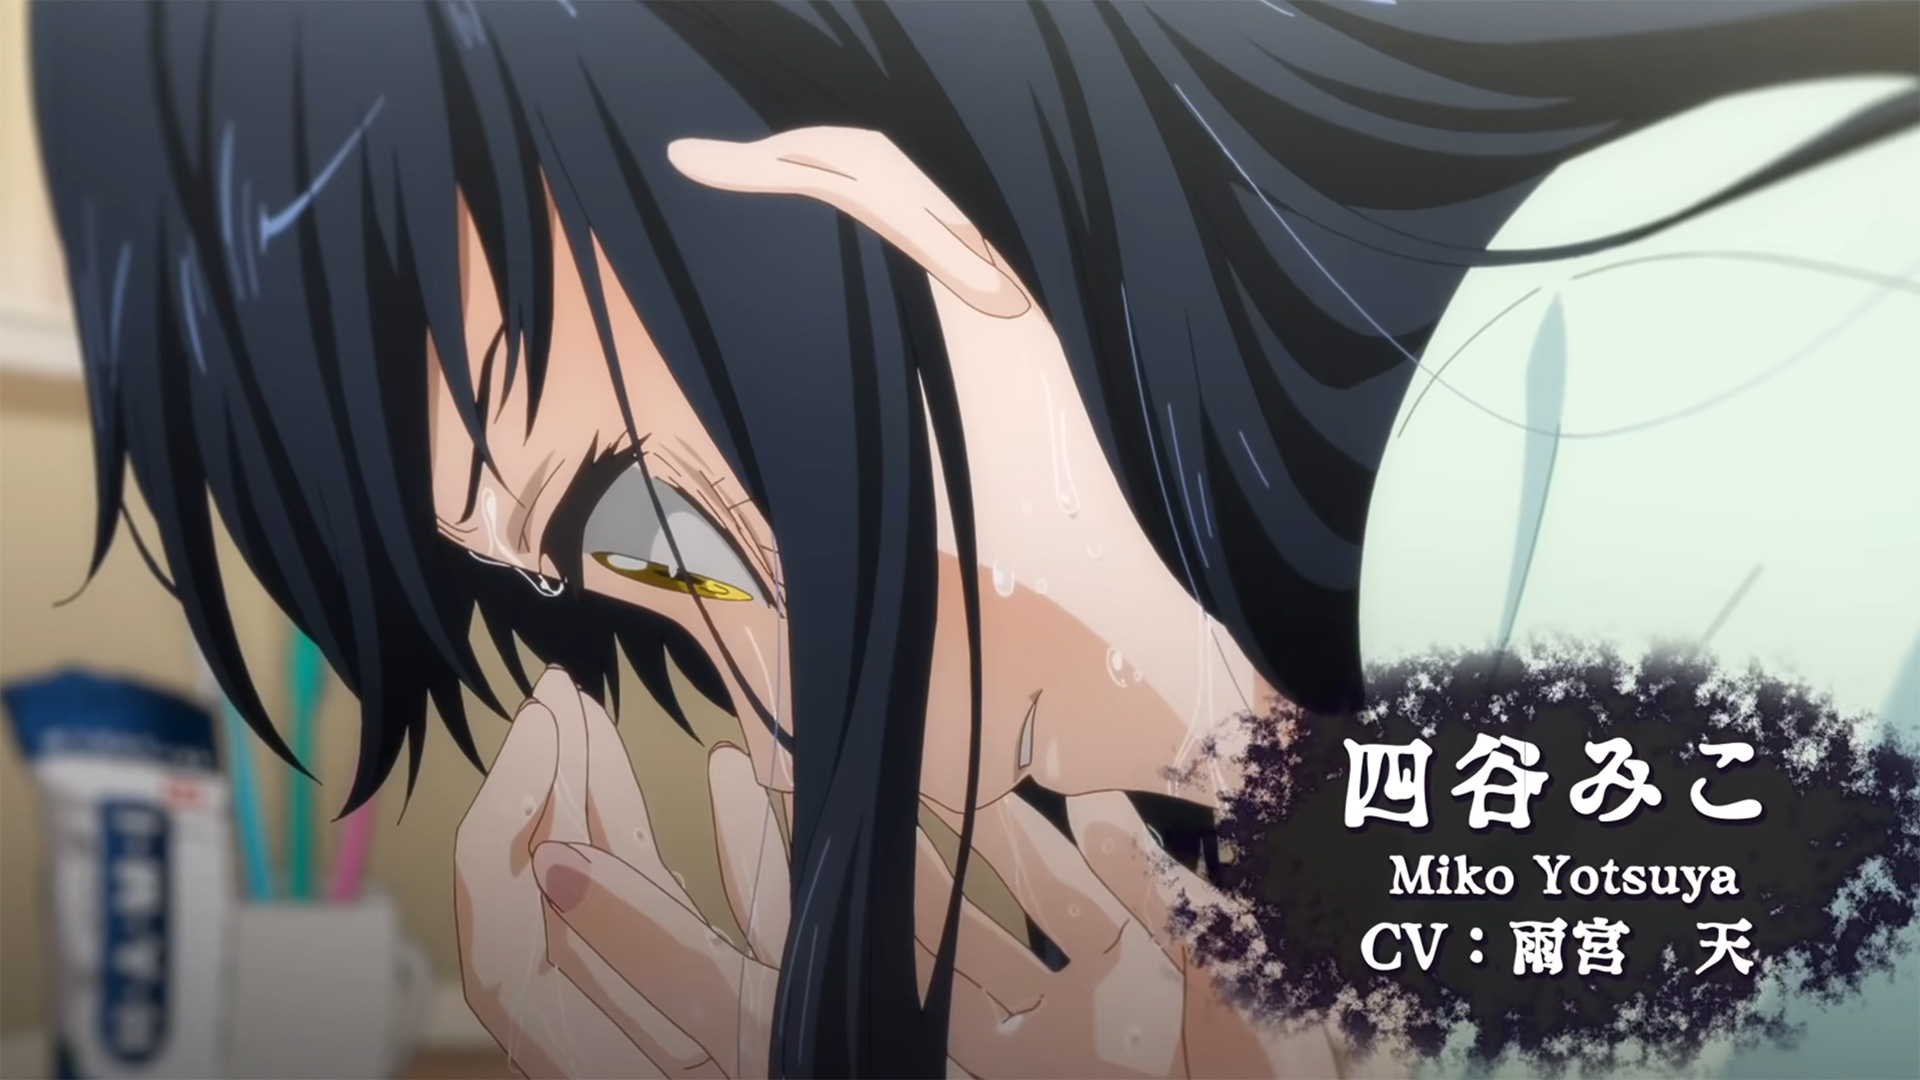 Assista Mieruko-chan temporada 1 episódio 10 em streaming